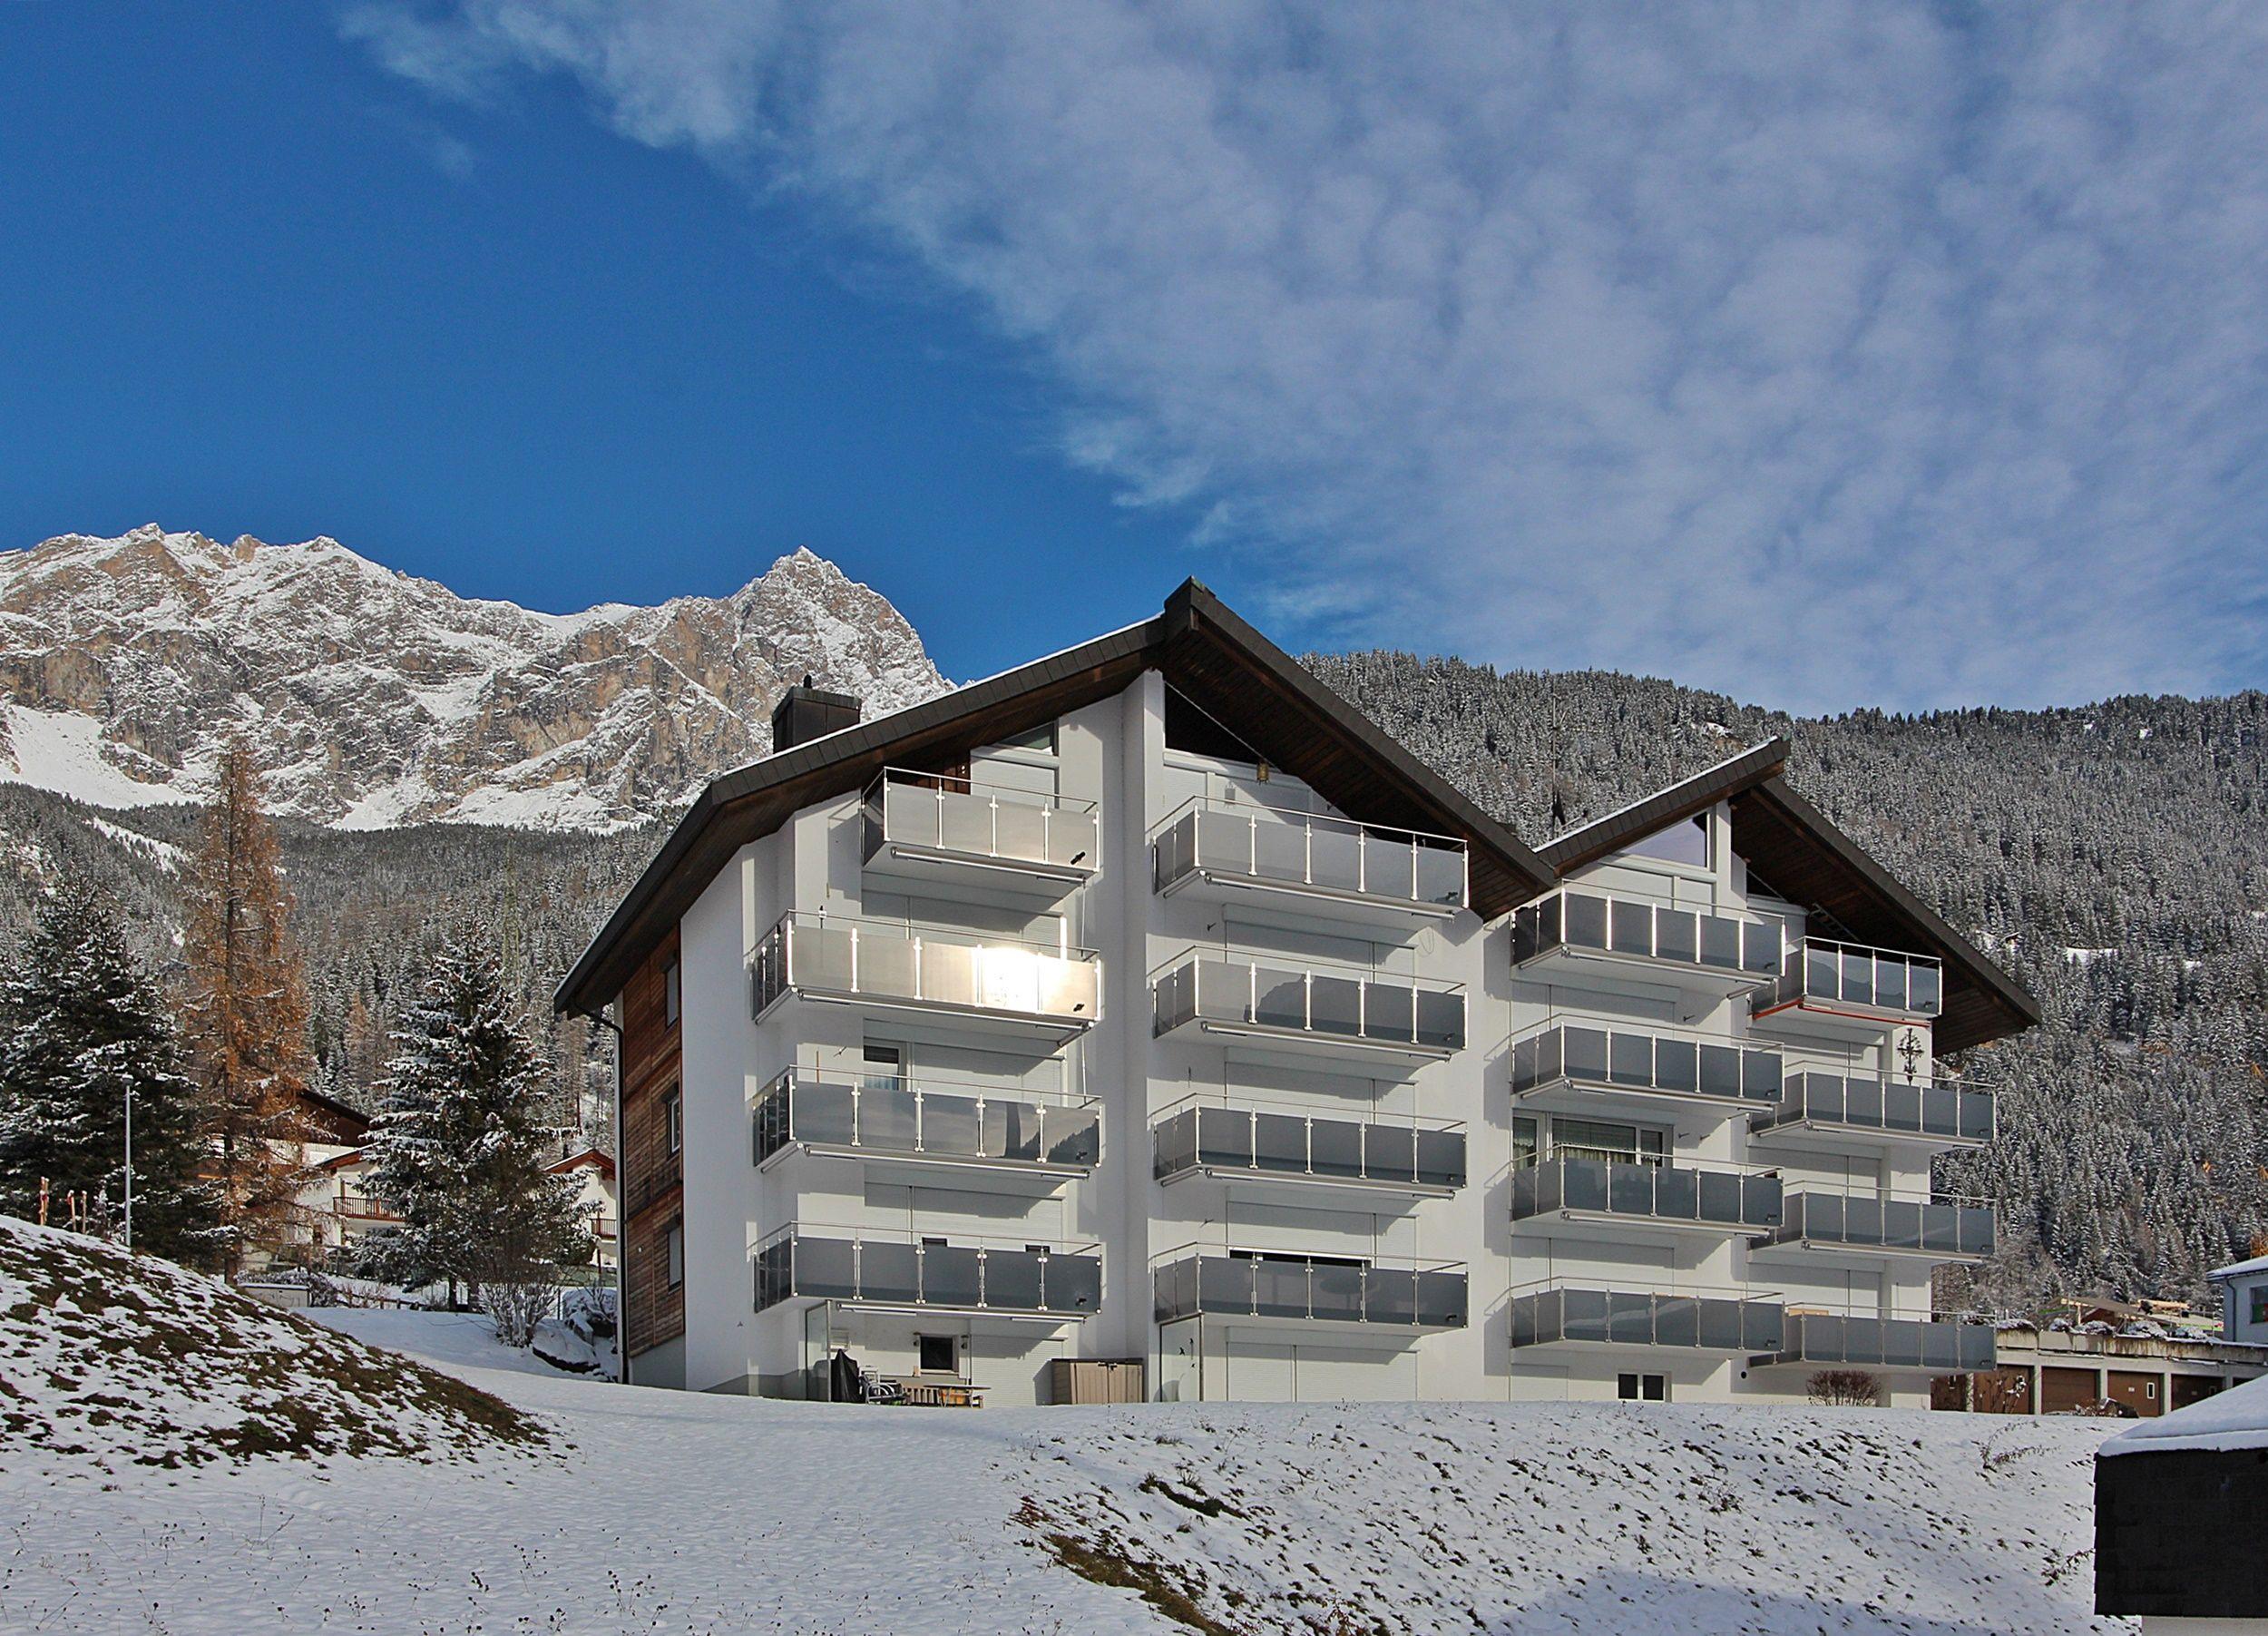 Tgesa La Niva 11 3.5 Zimmerwohnung -  6 Betten Ferienwohnung in der Schweiz